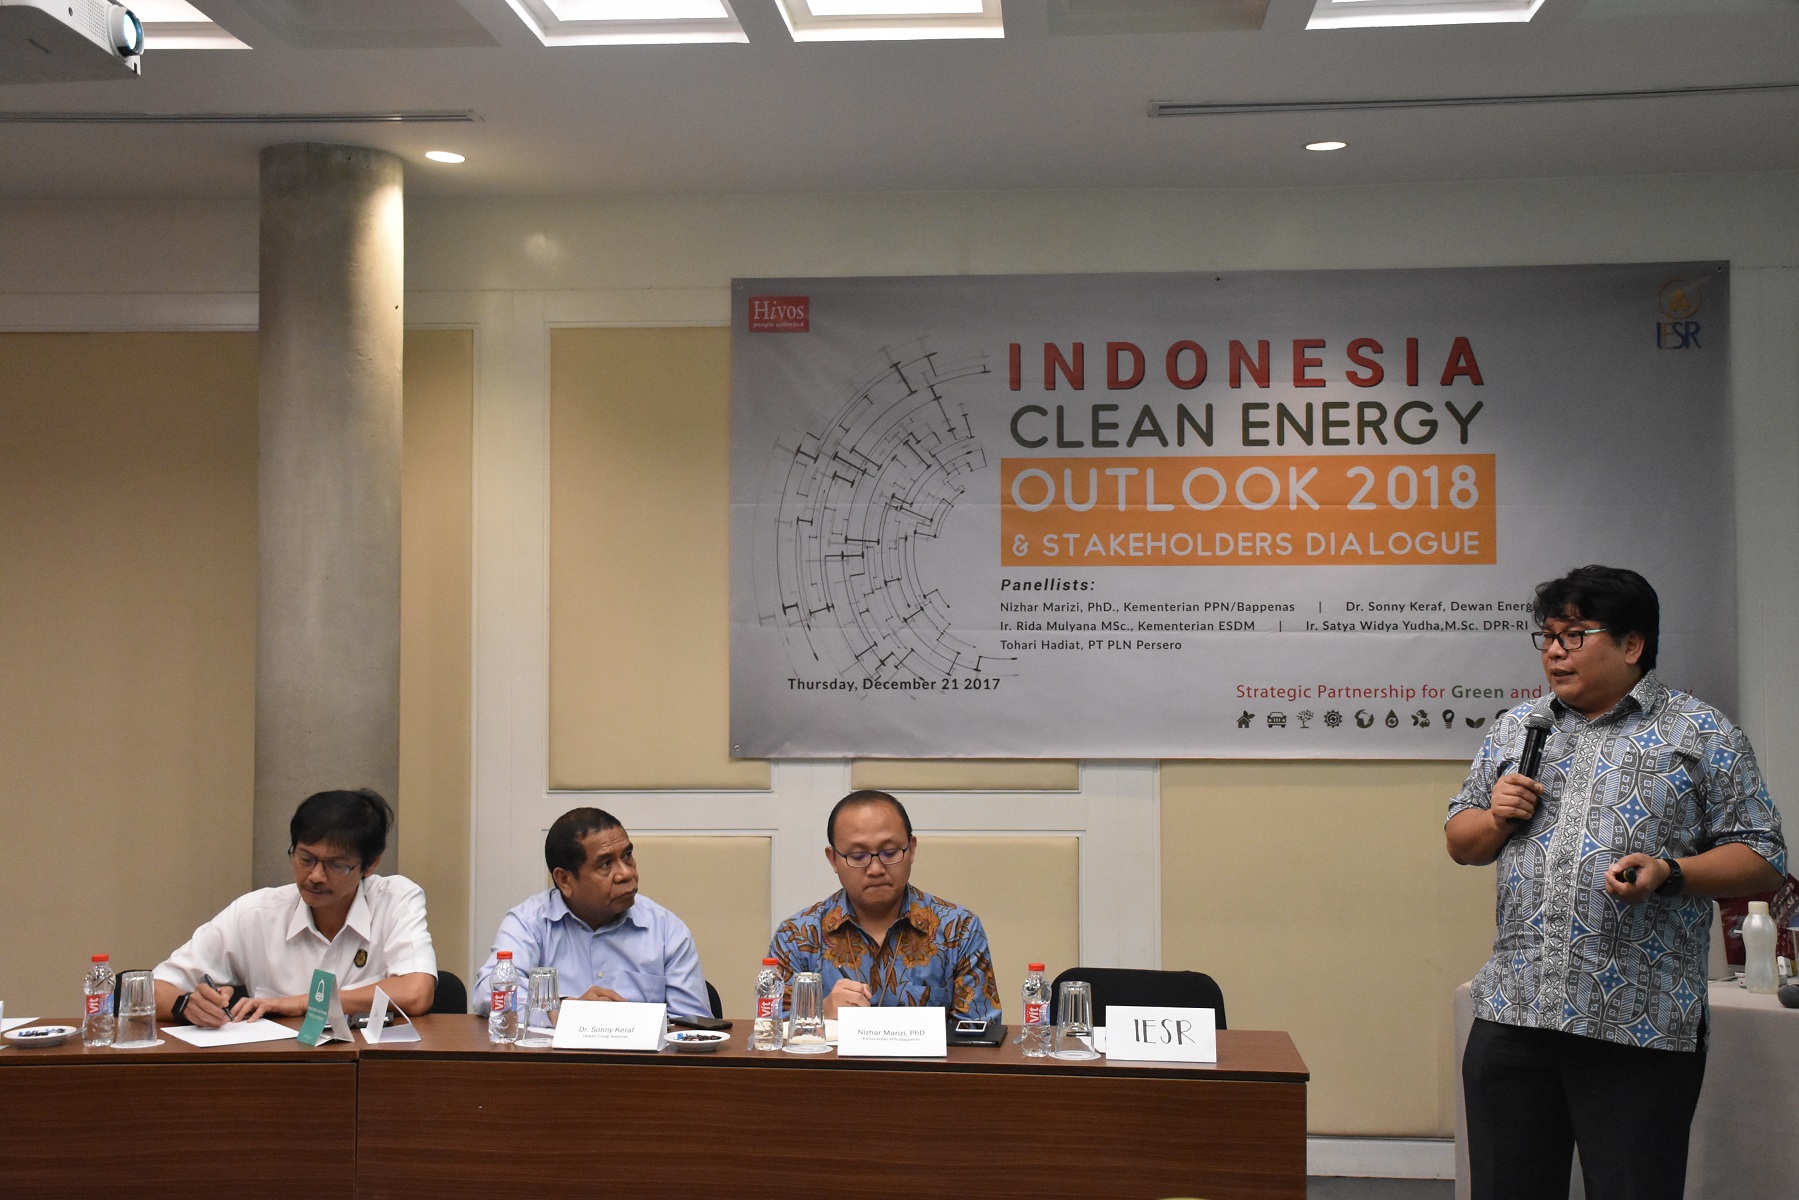 2. Mengutamakan daya saing masyarakat, dengan listrik yang murah akan meningkatkan daya saing Indonesia di dunia